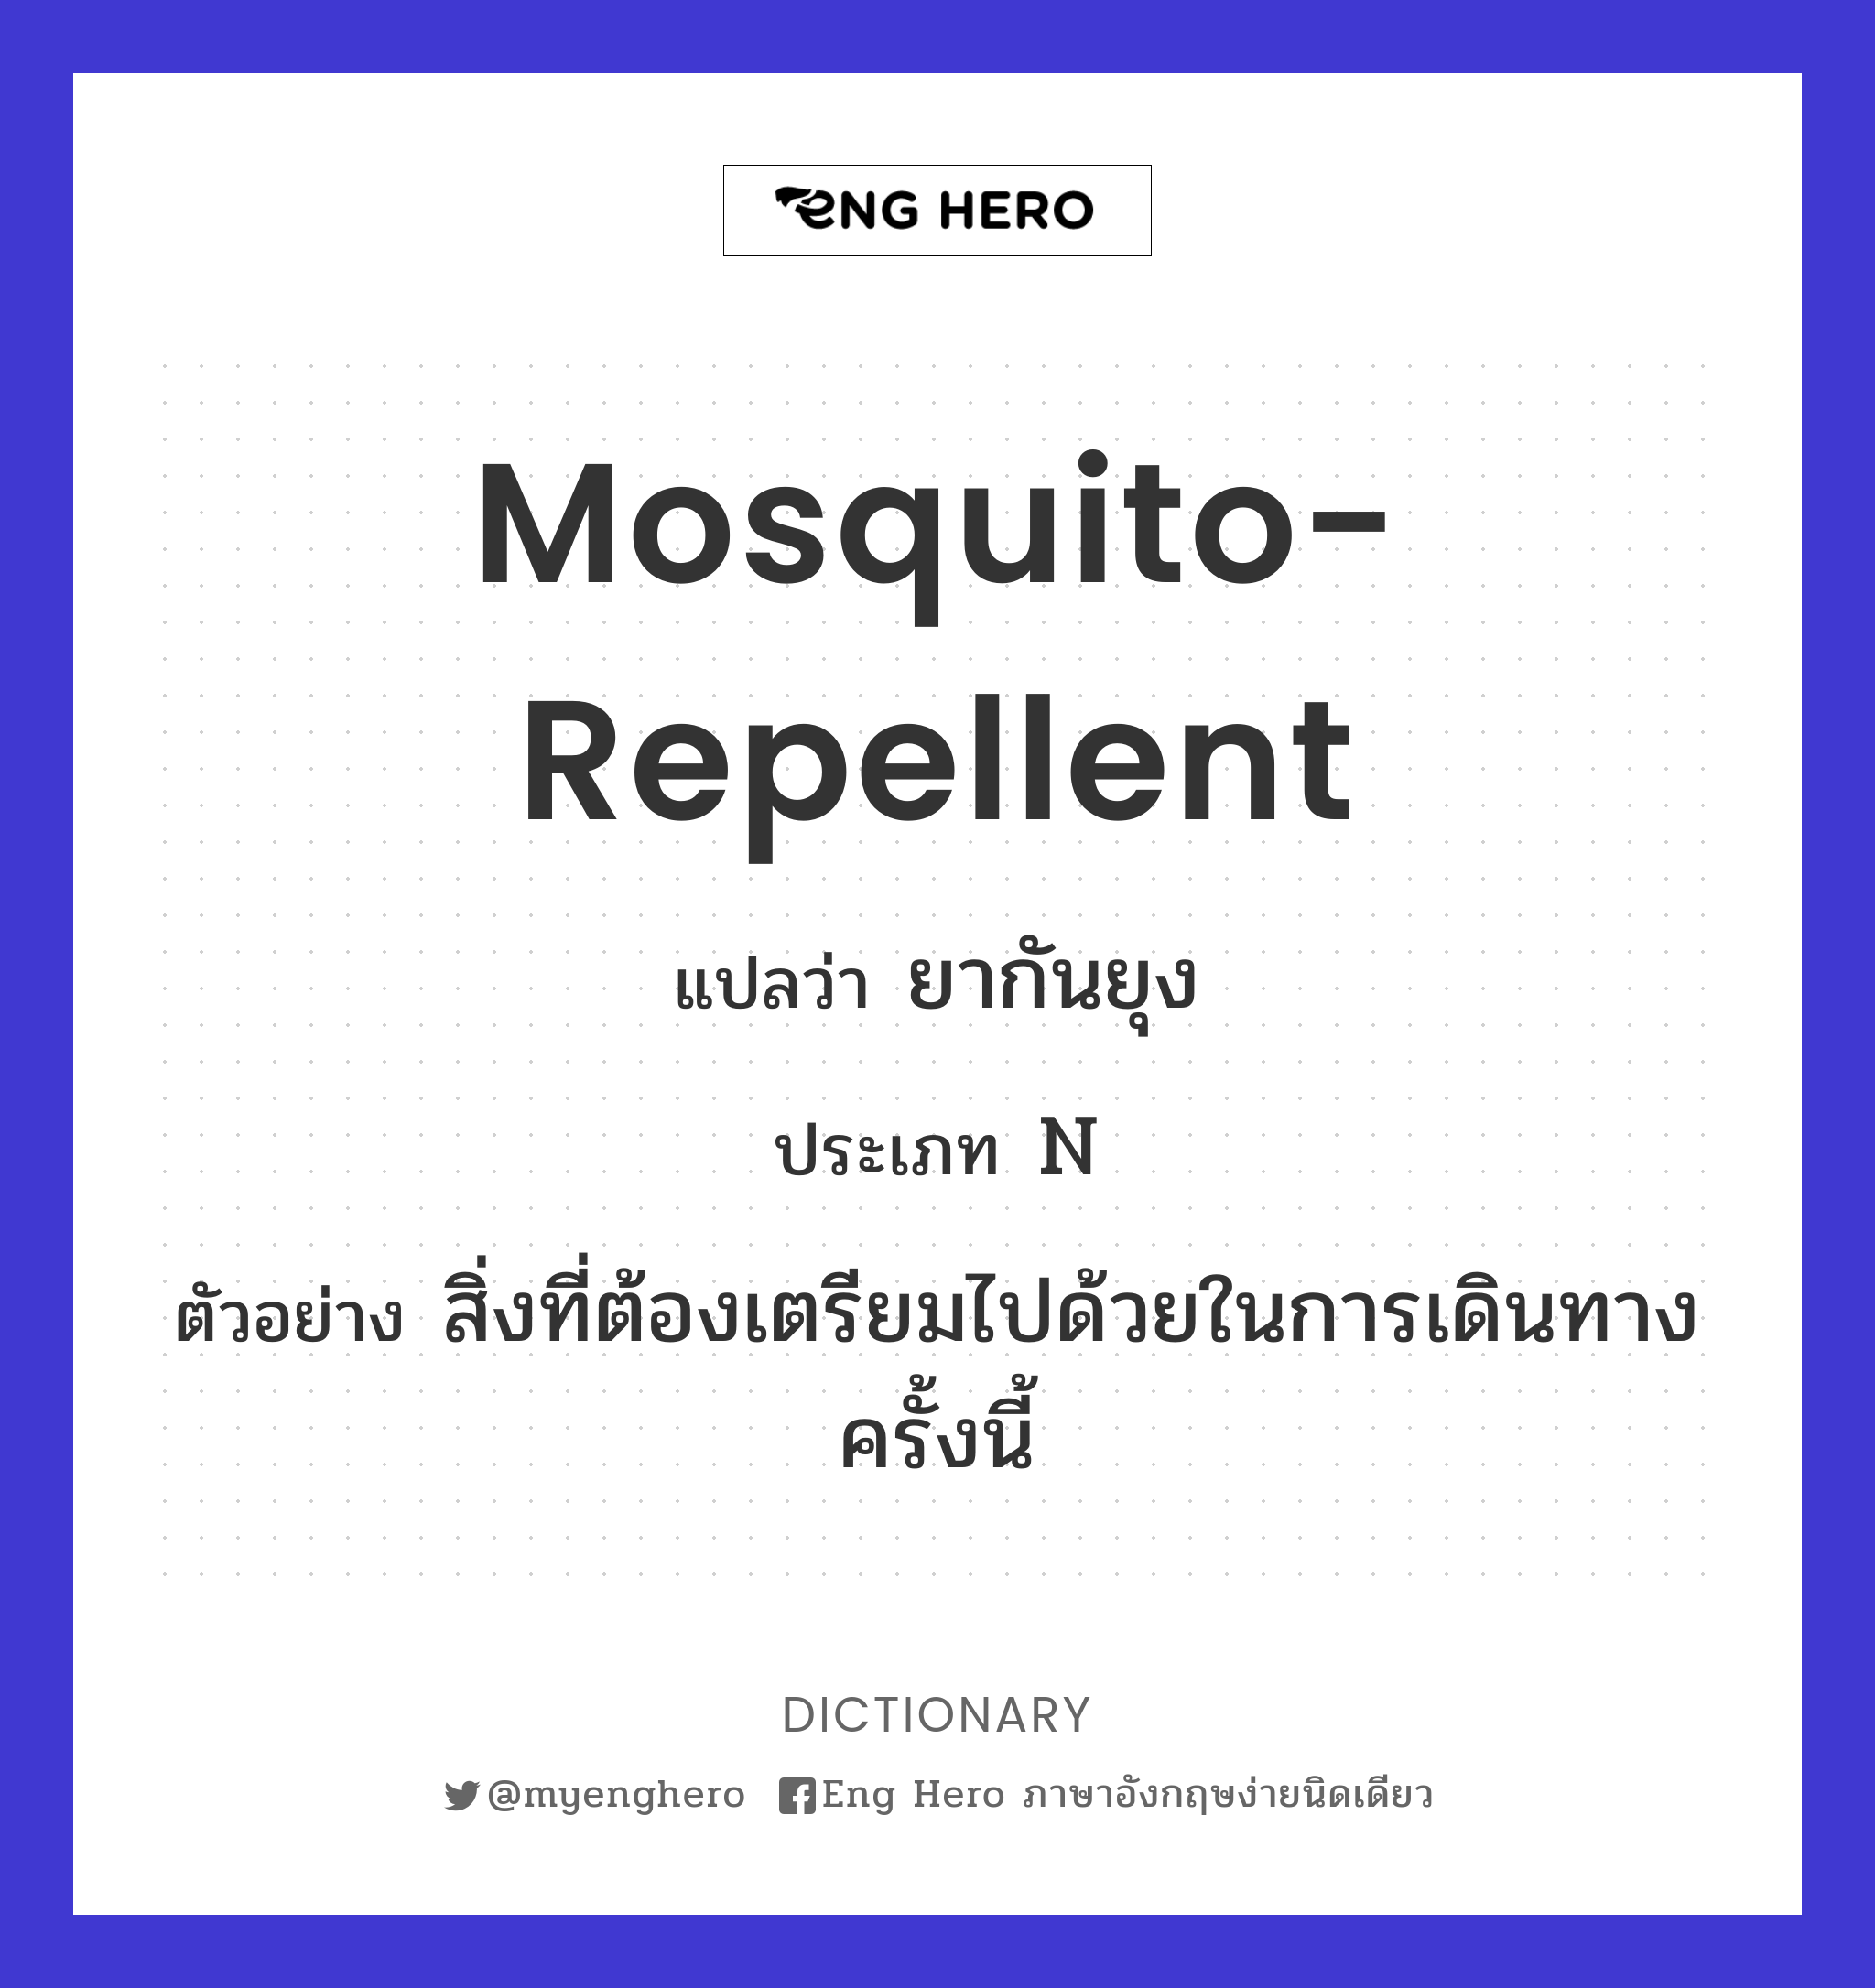 mosquito-repellent